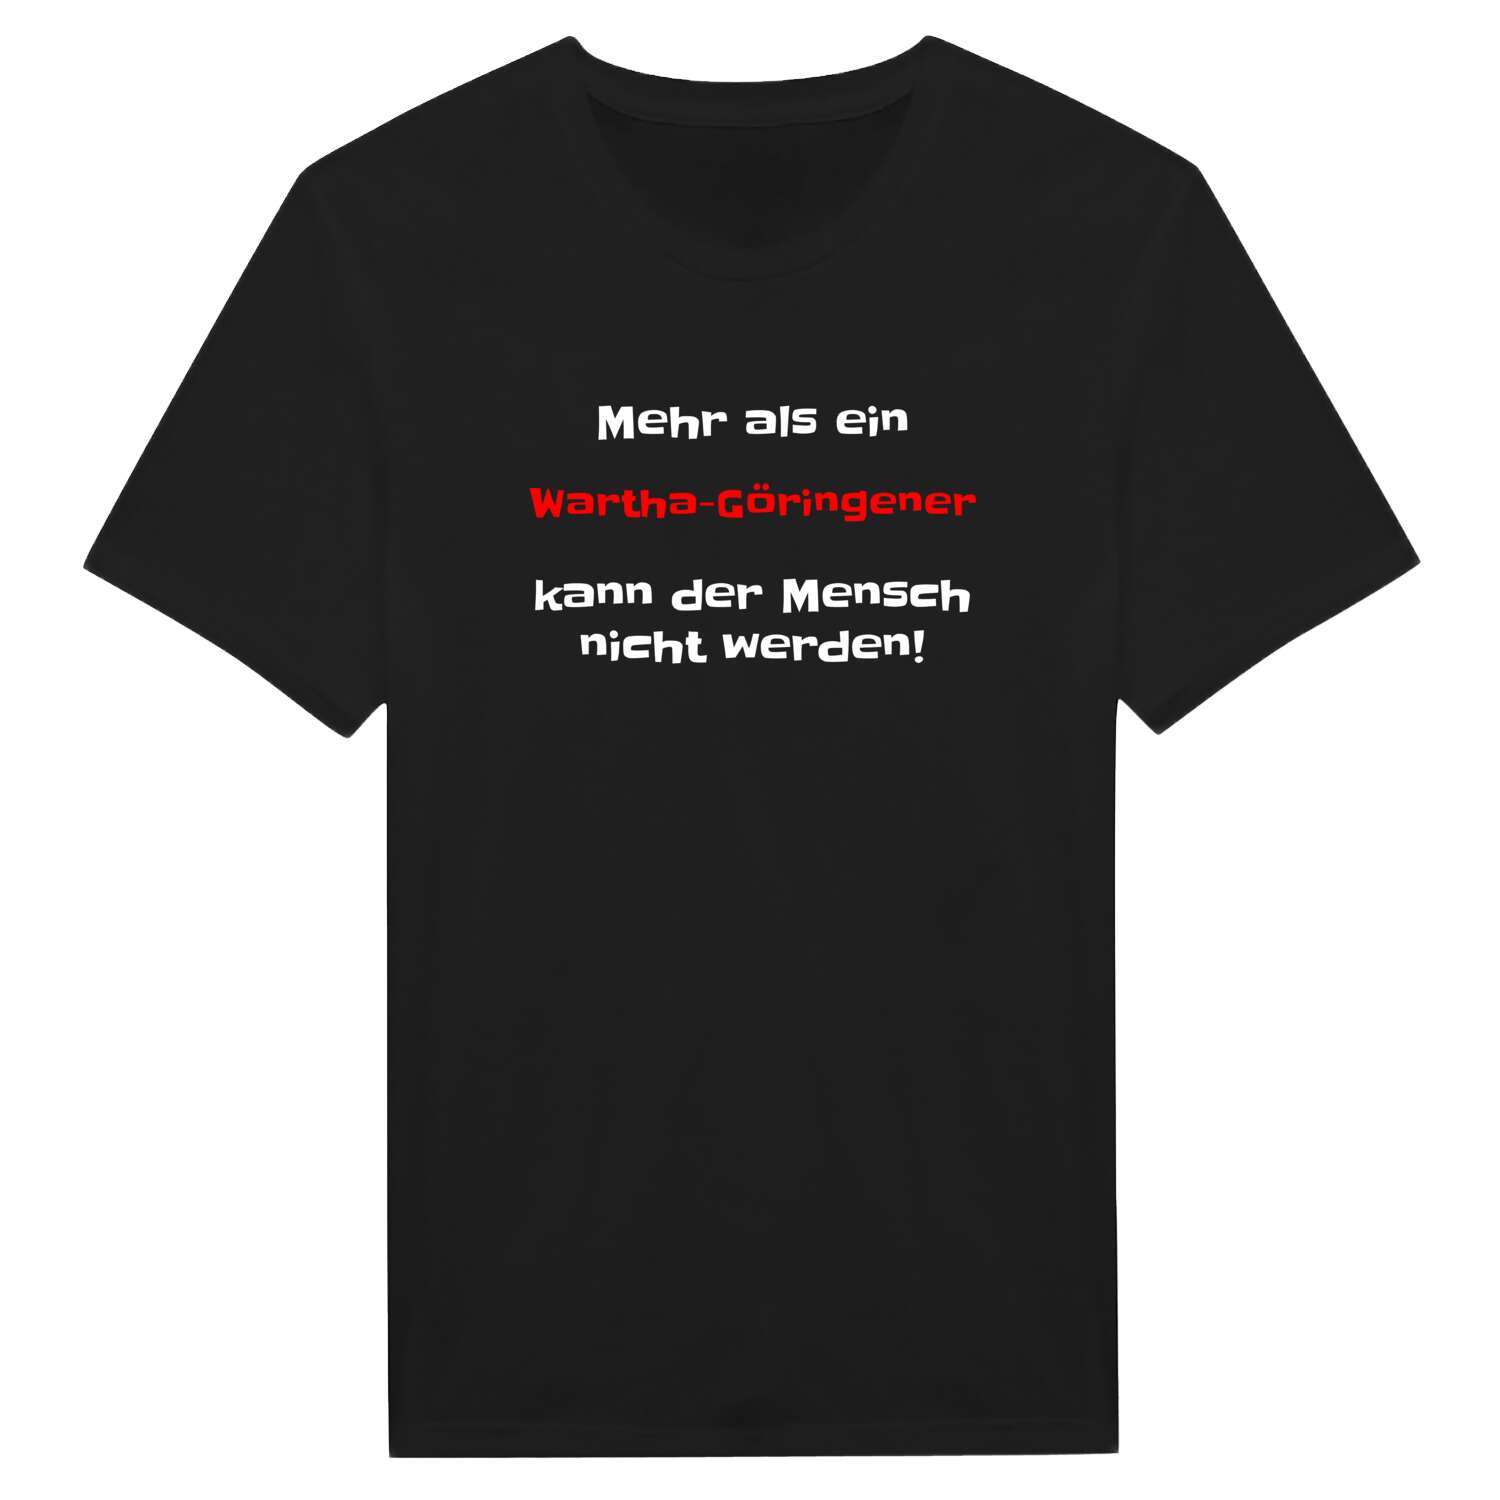 Wartha-Göringen T-Shirt »Mehr als ein«